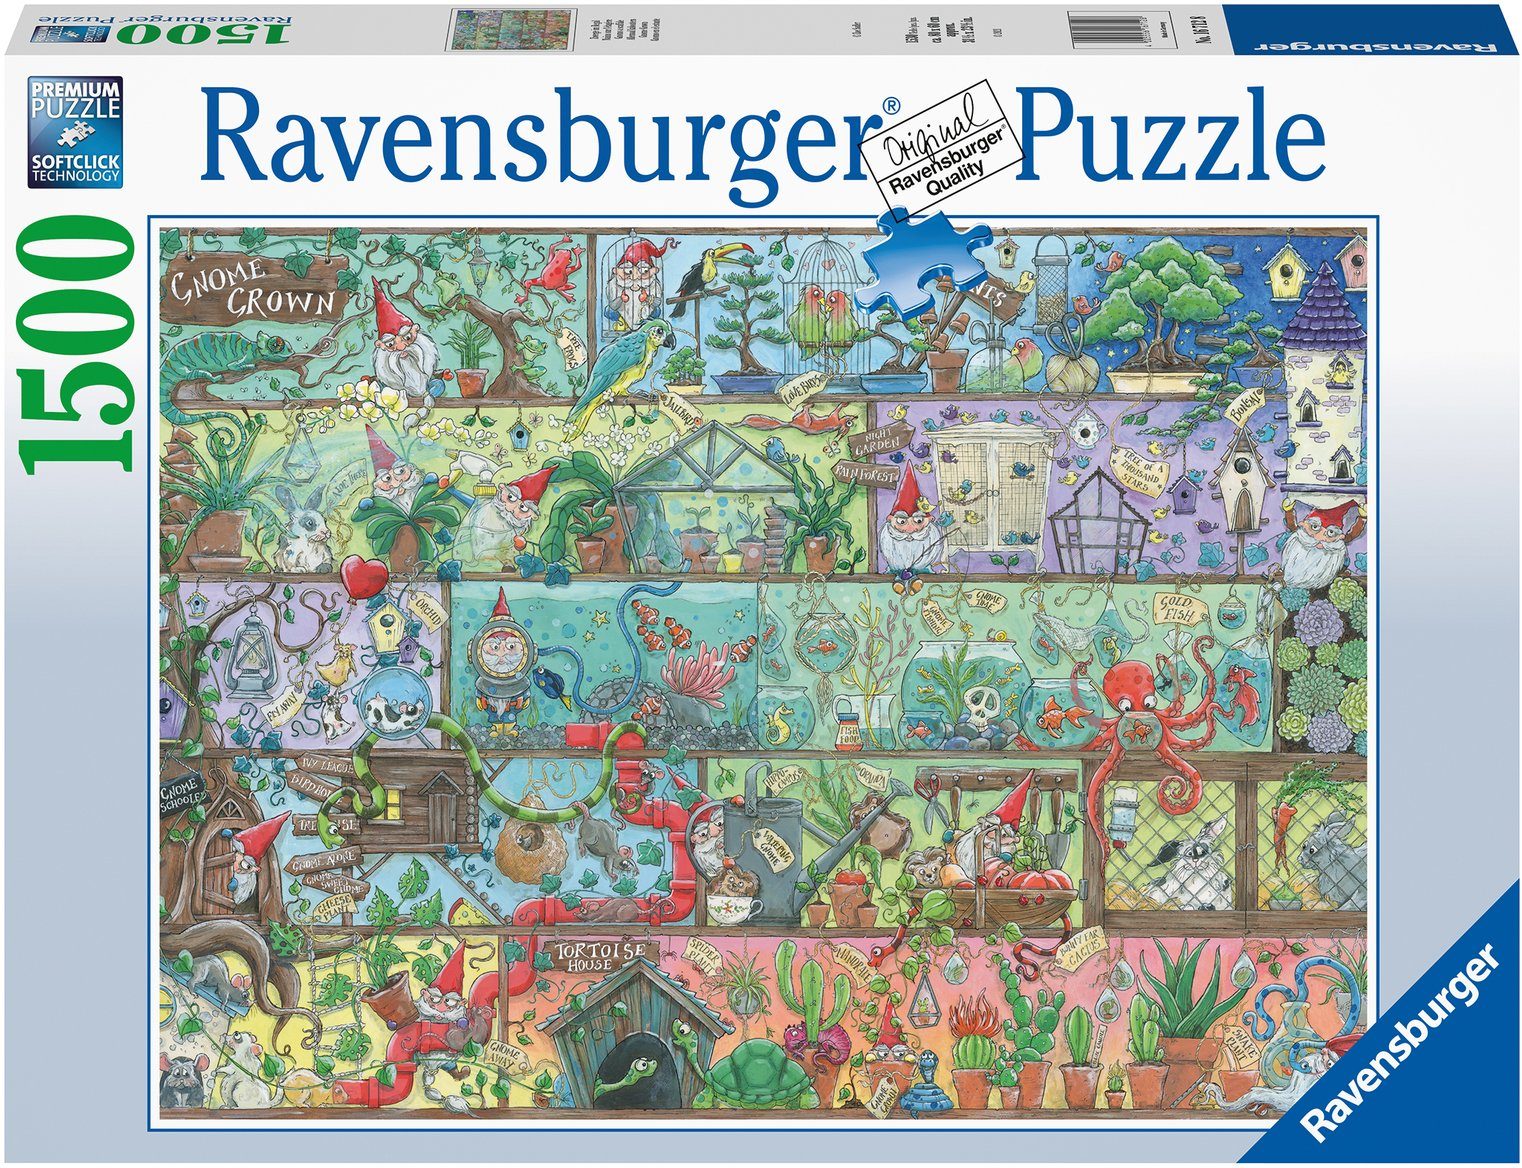 Ravensburger Puzzle Zwerge im Regal, 1500 Puzzleteile, Made in Germany, FSC® - schützt Wald - weltweit